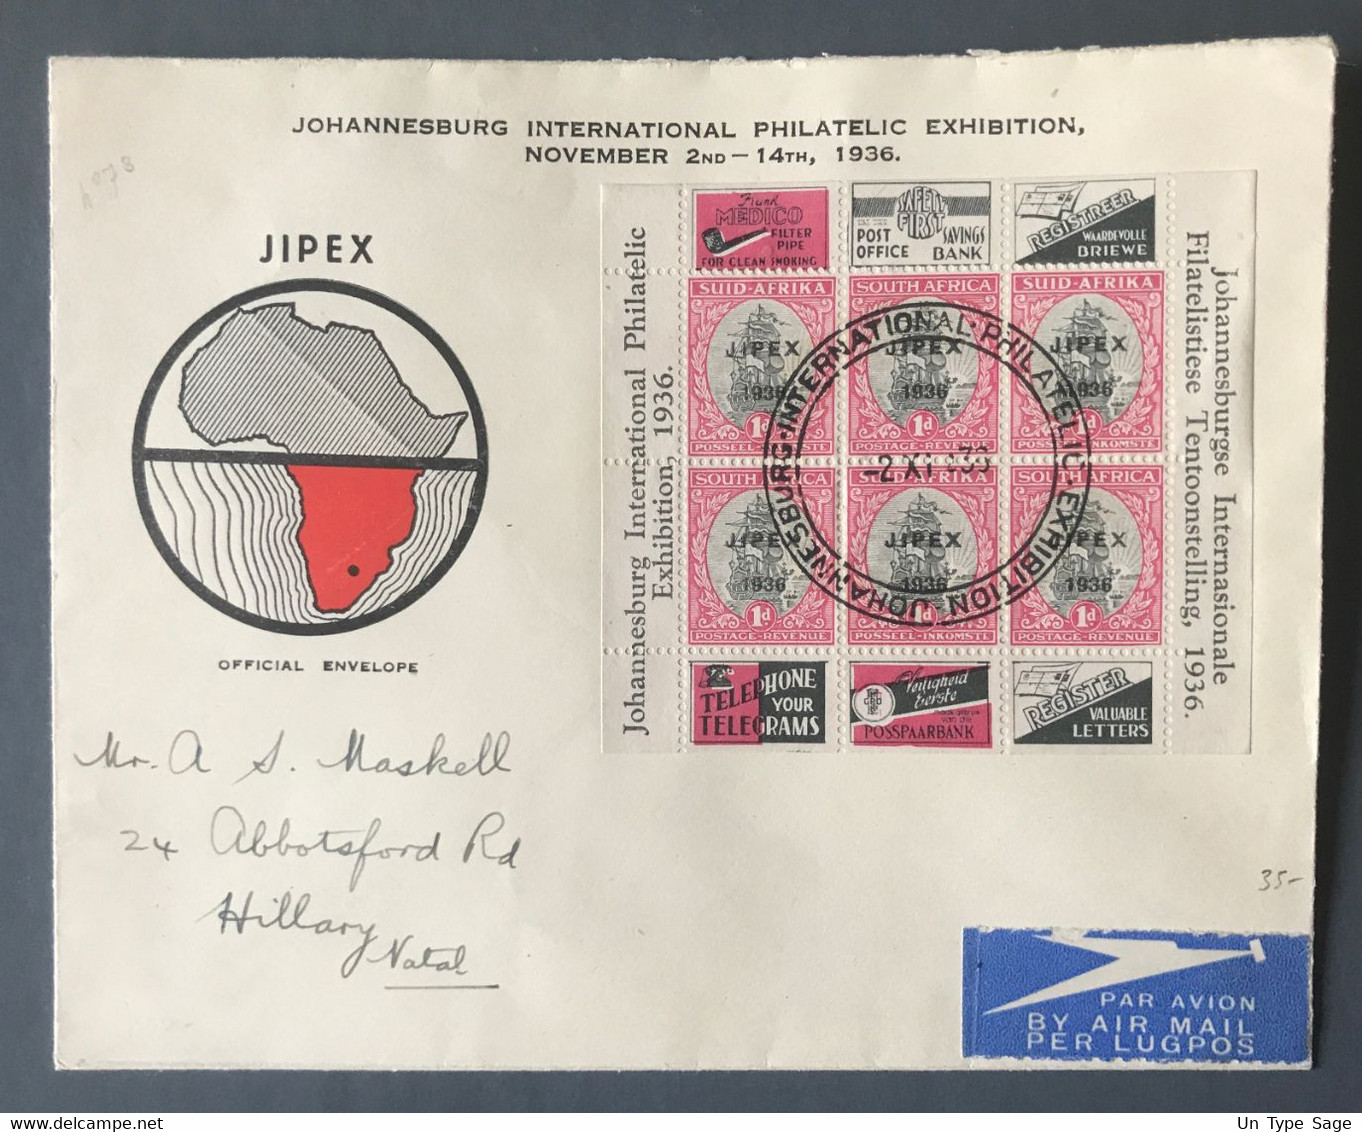 Afrique Du Sud - Bloc Surchargé 1936 Sur Enveloppe Commémorative - (B3928) - Non Classificati